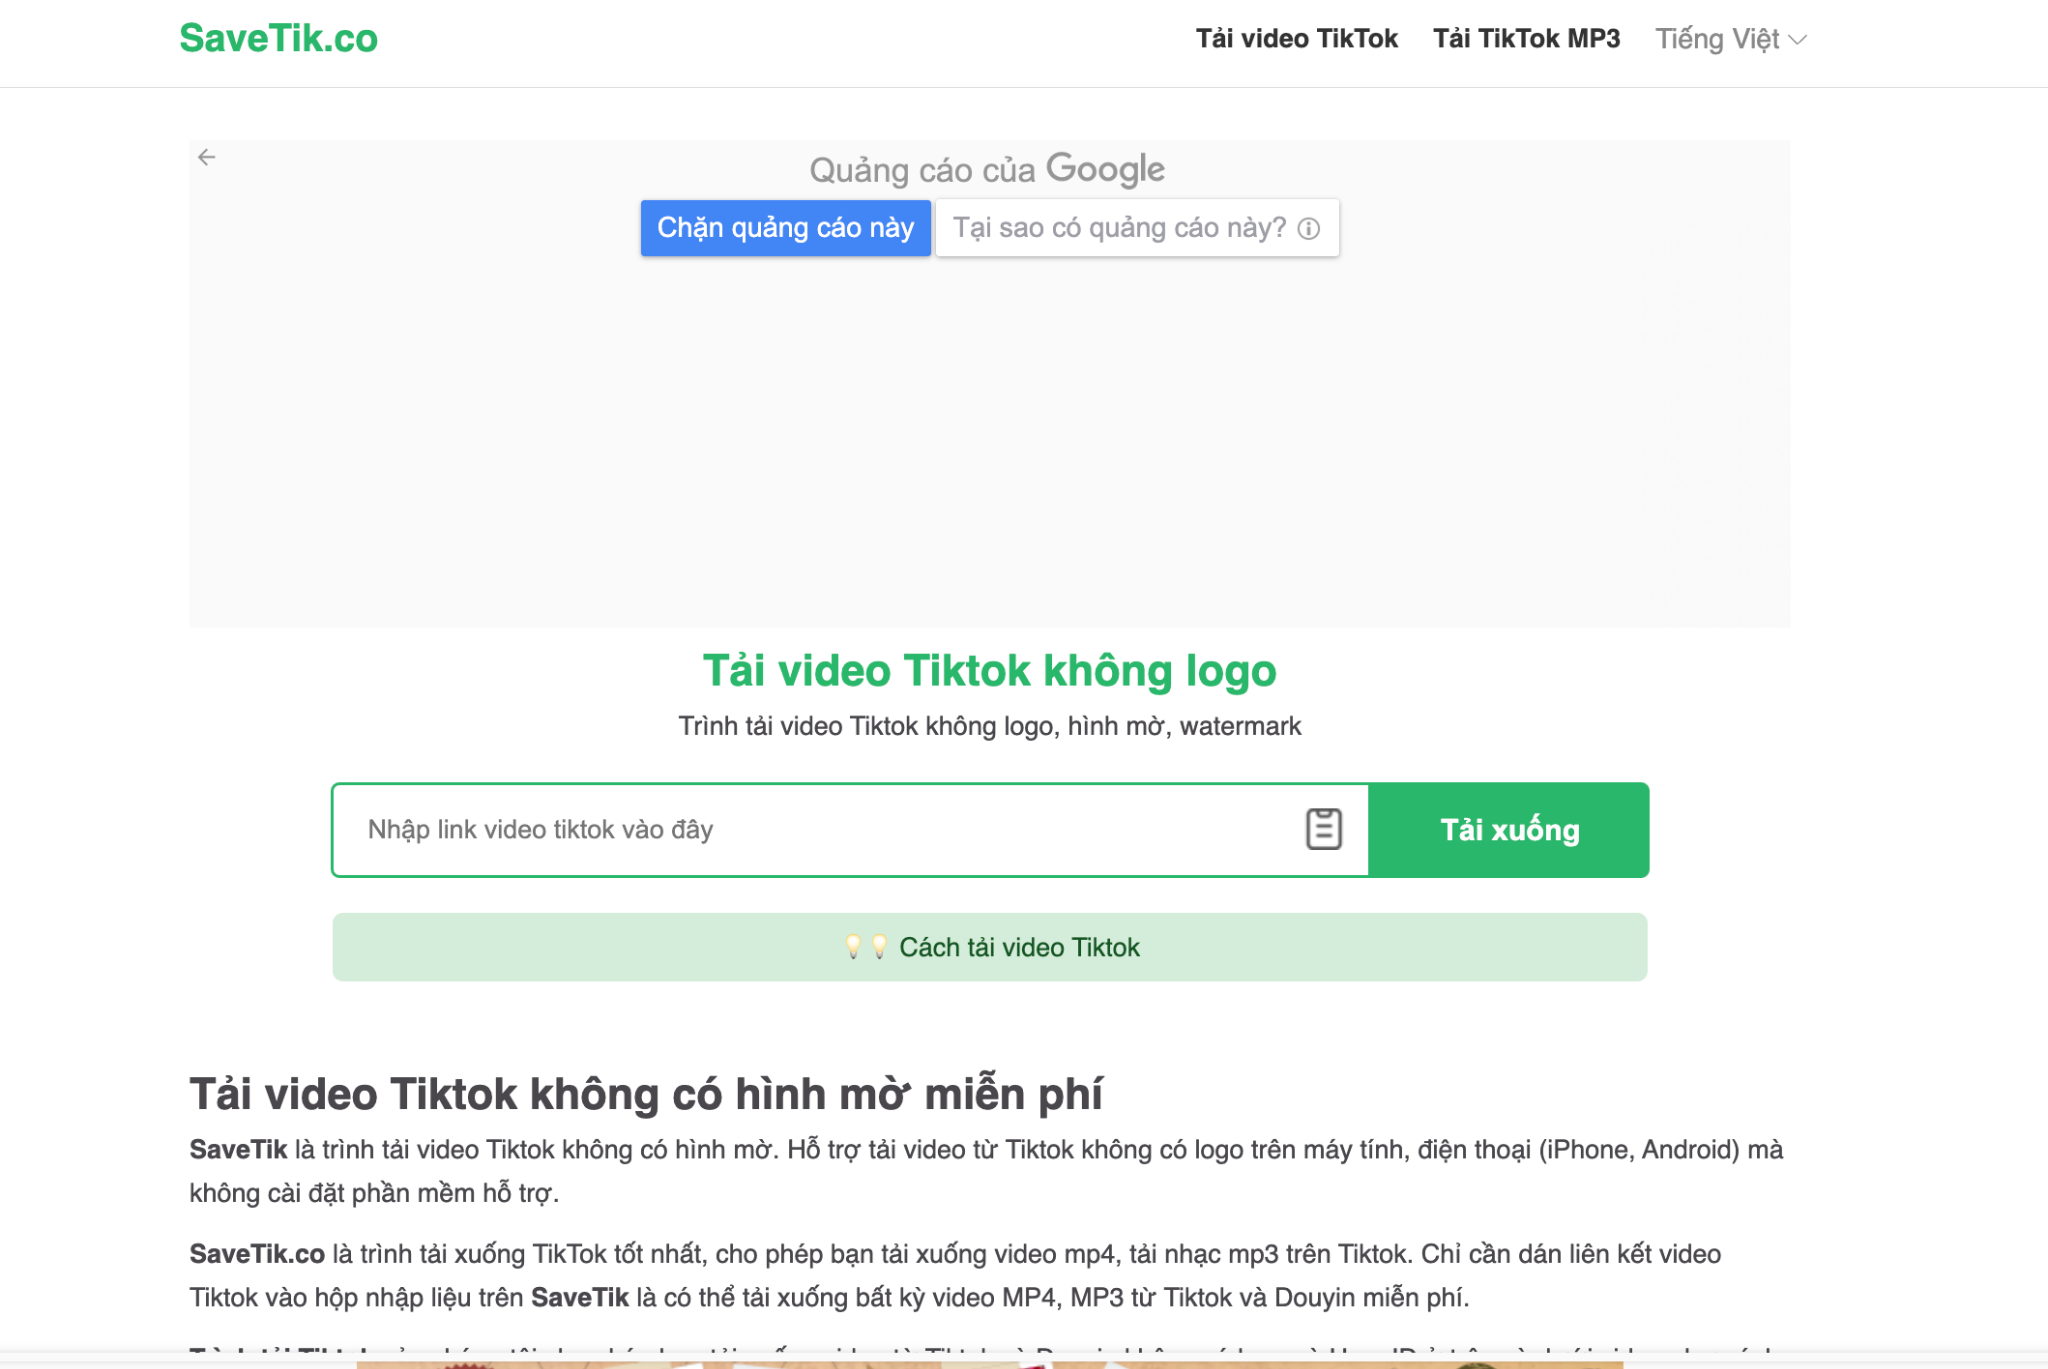 Dùng SaveTik để tải video TikTok Trung Quốc không logo